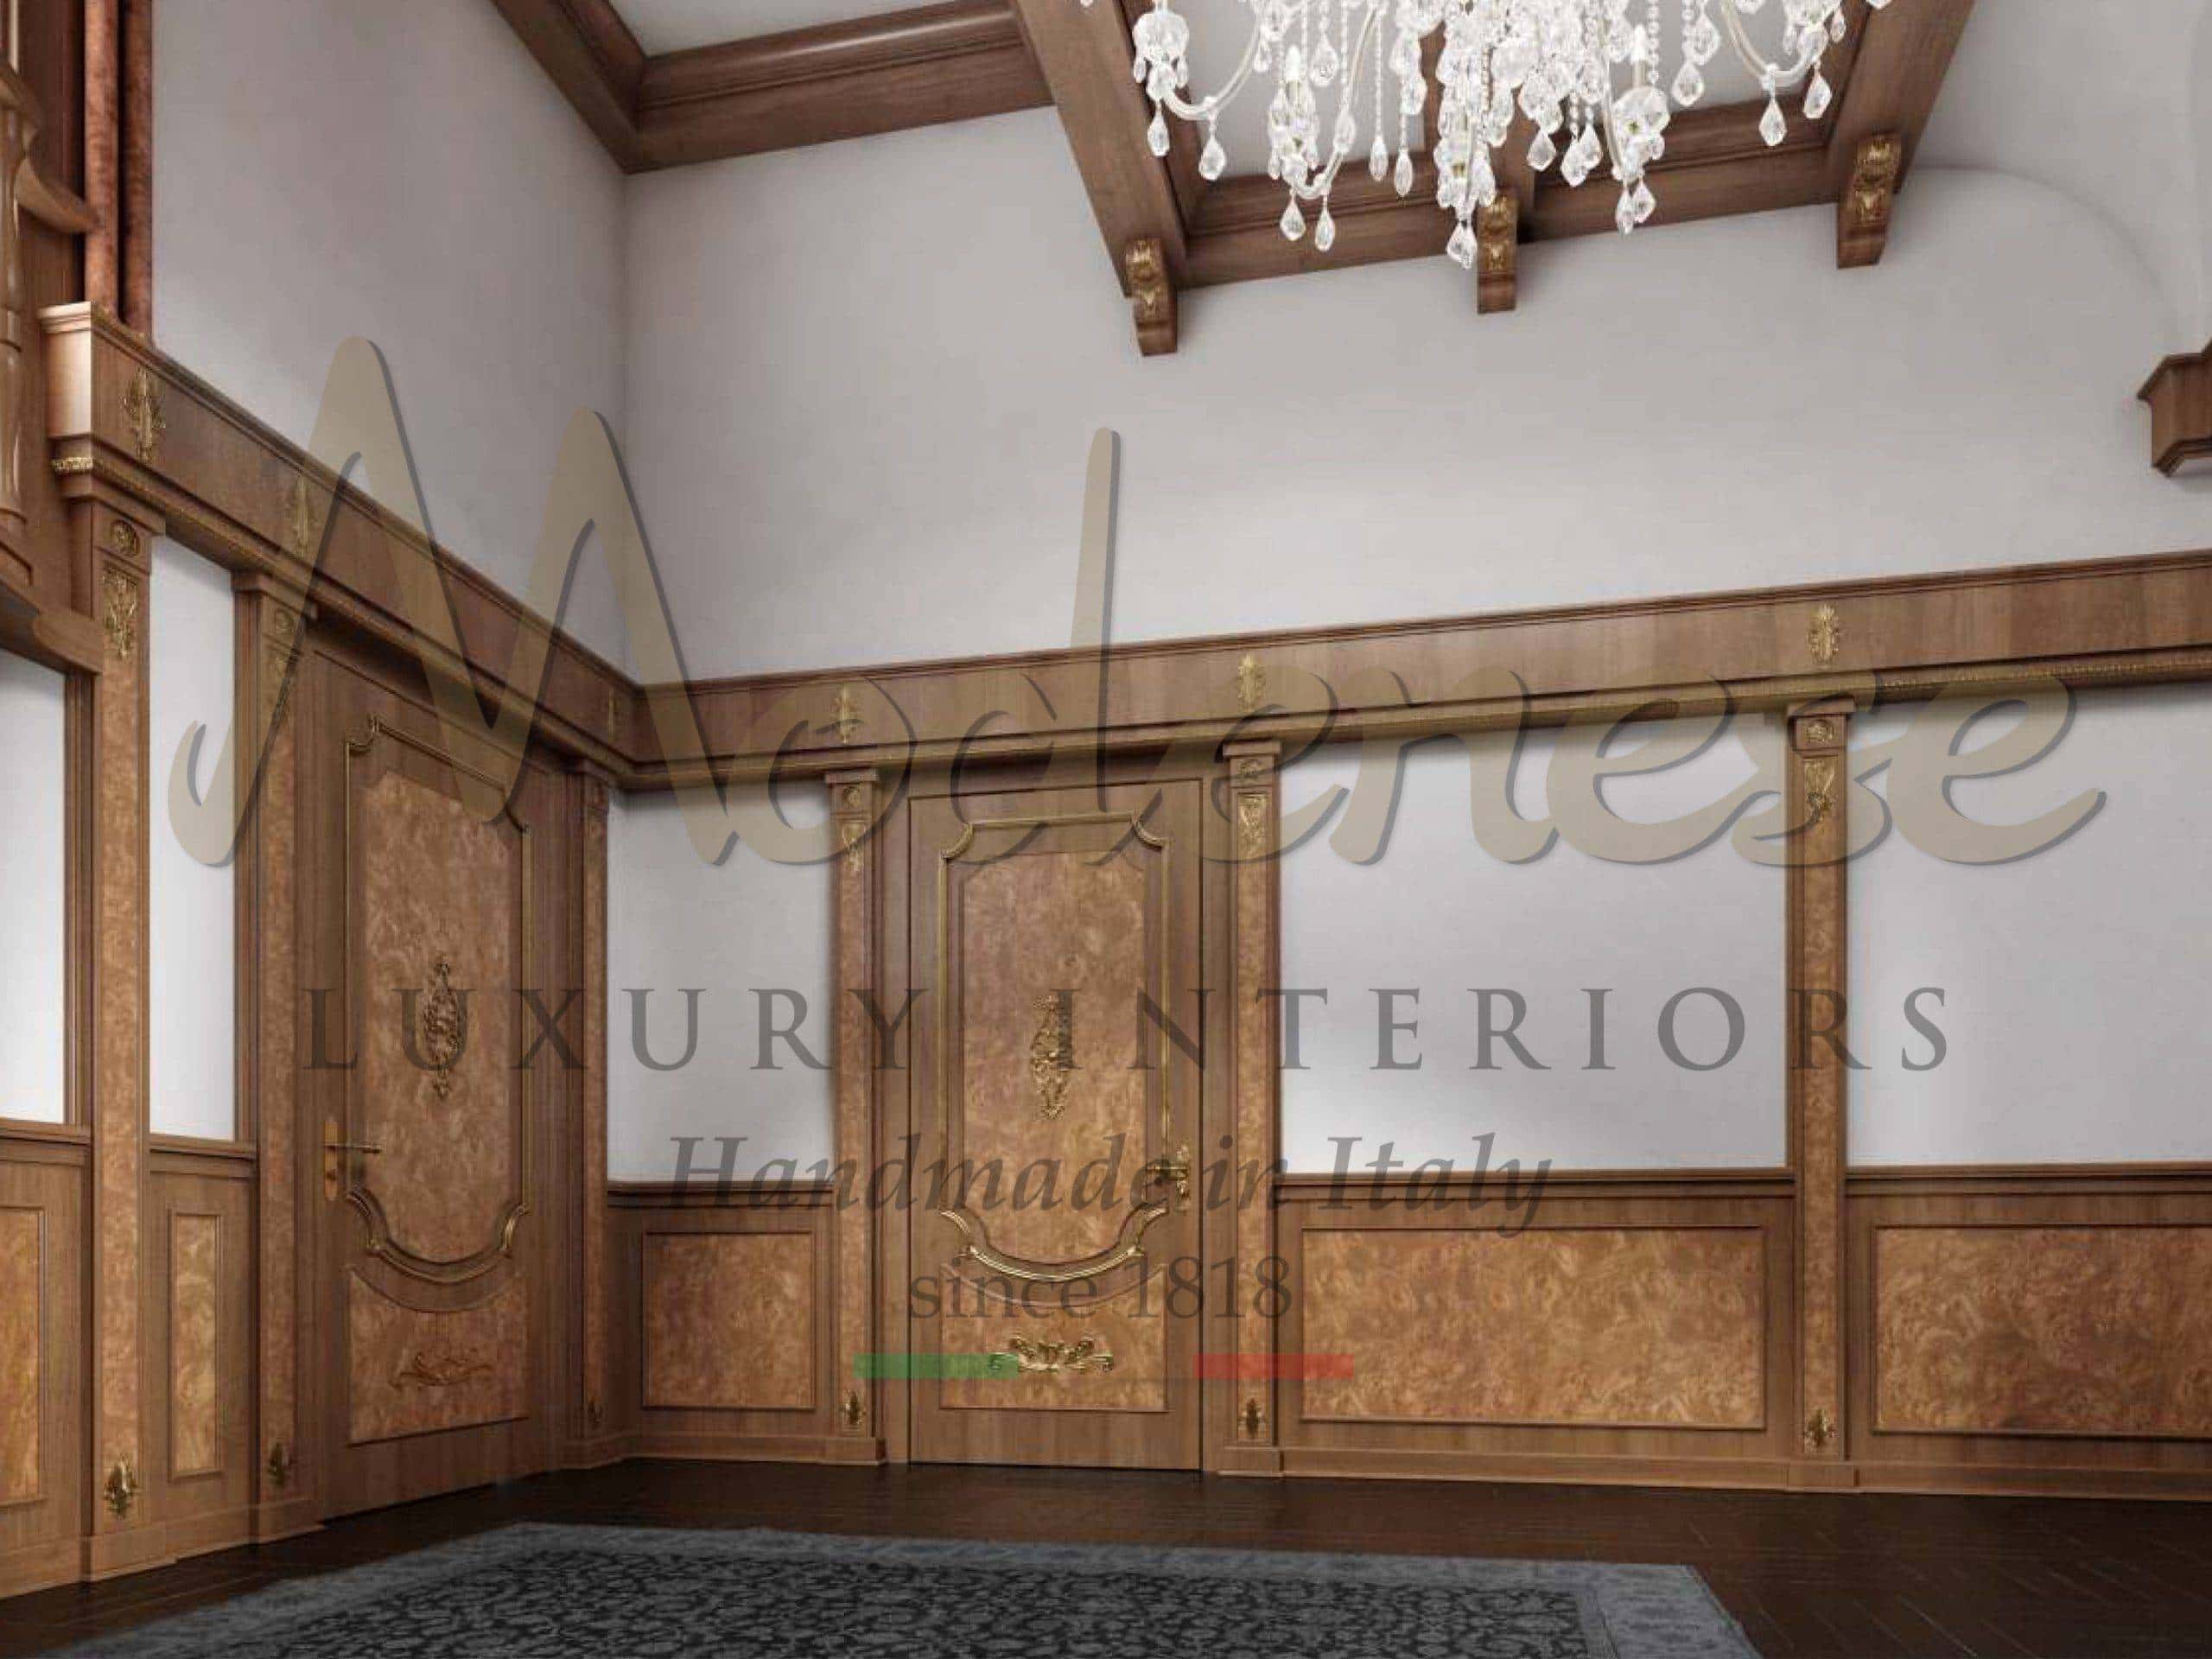 意大利典豪华定制木墙装饰 皇家住宅别墅和宫殿室内设计项目的完美解决方案